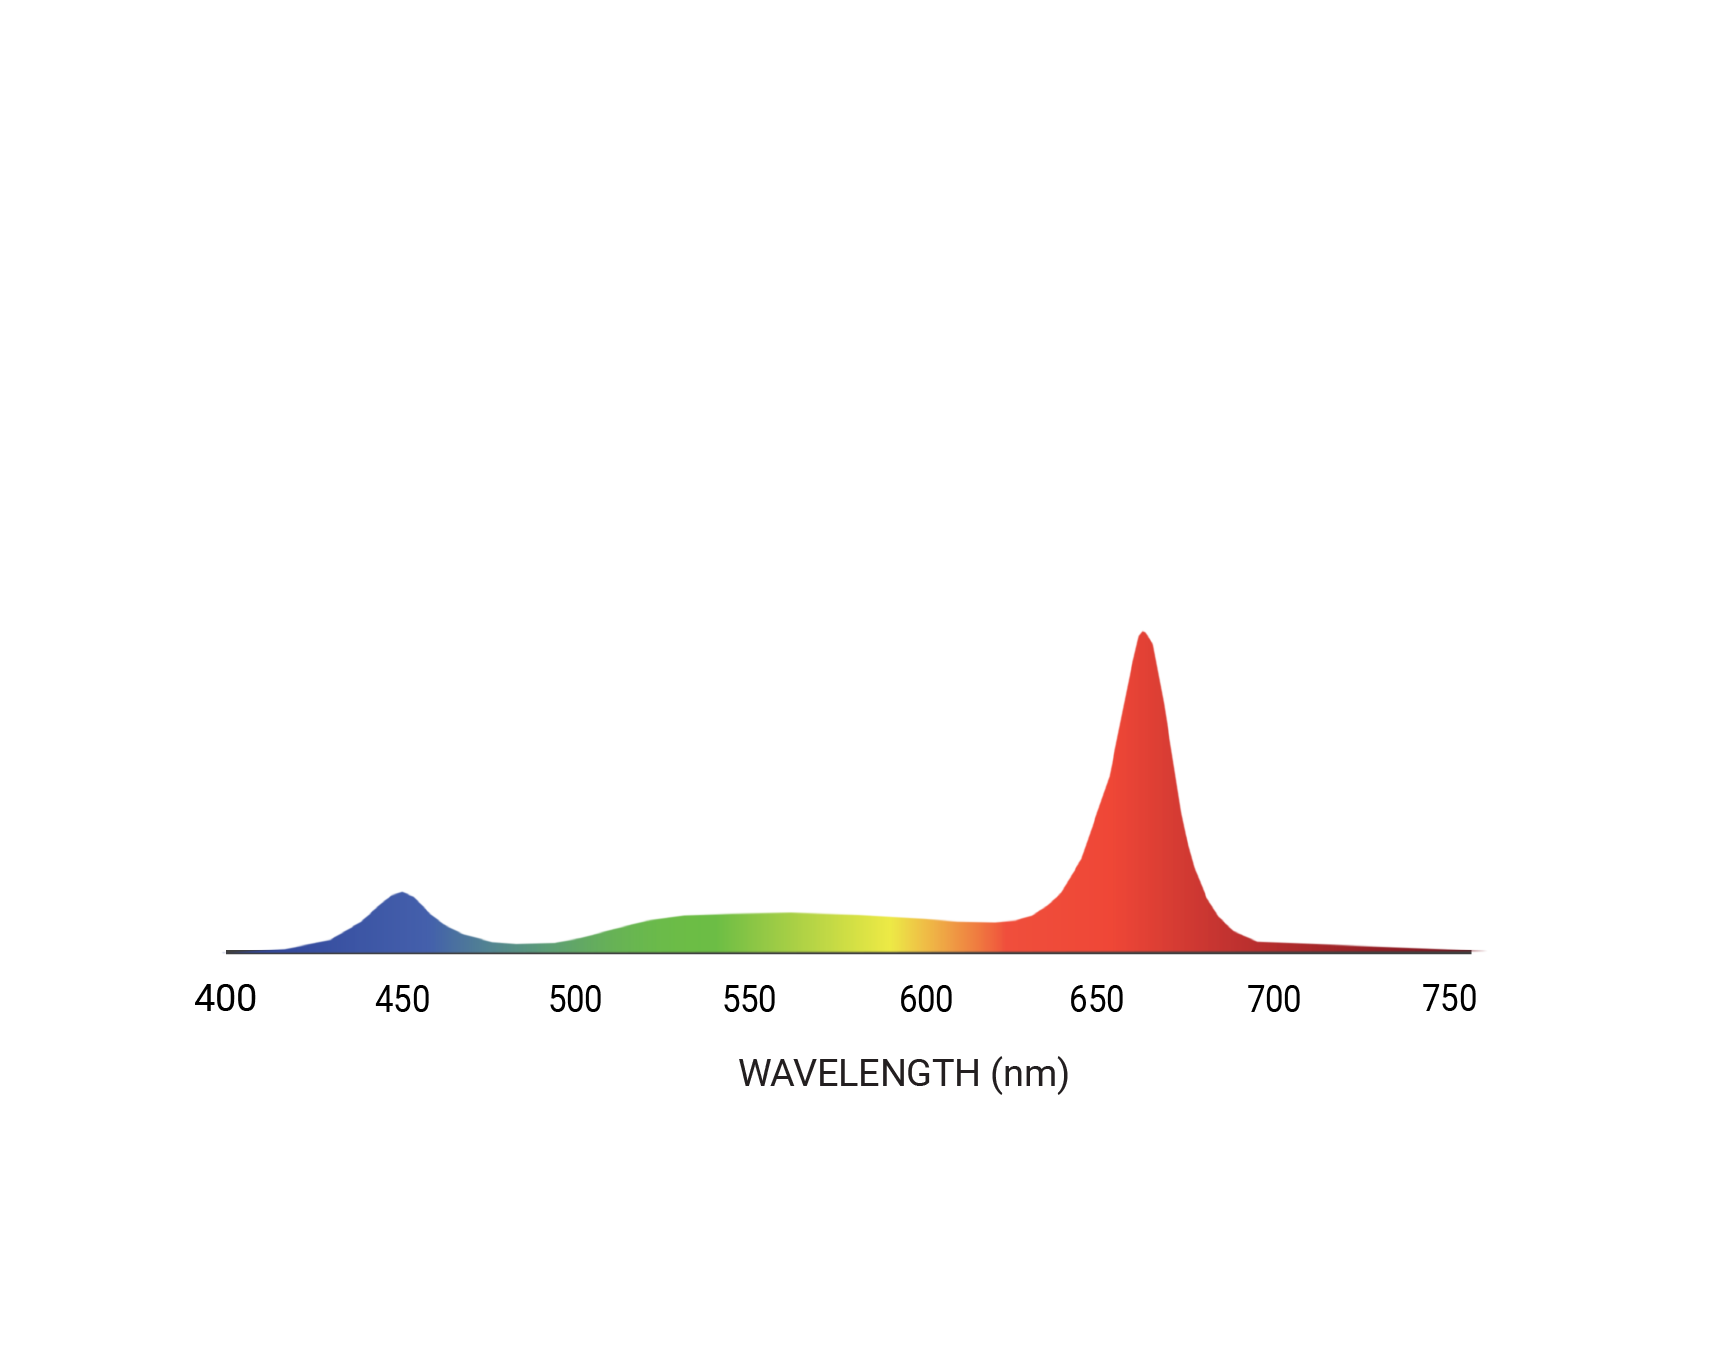 Ceres spectrum, PAR R60